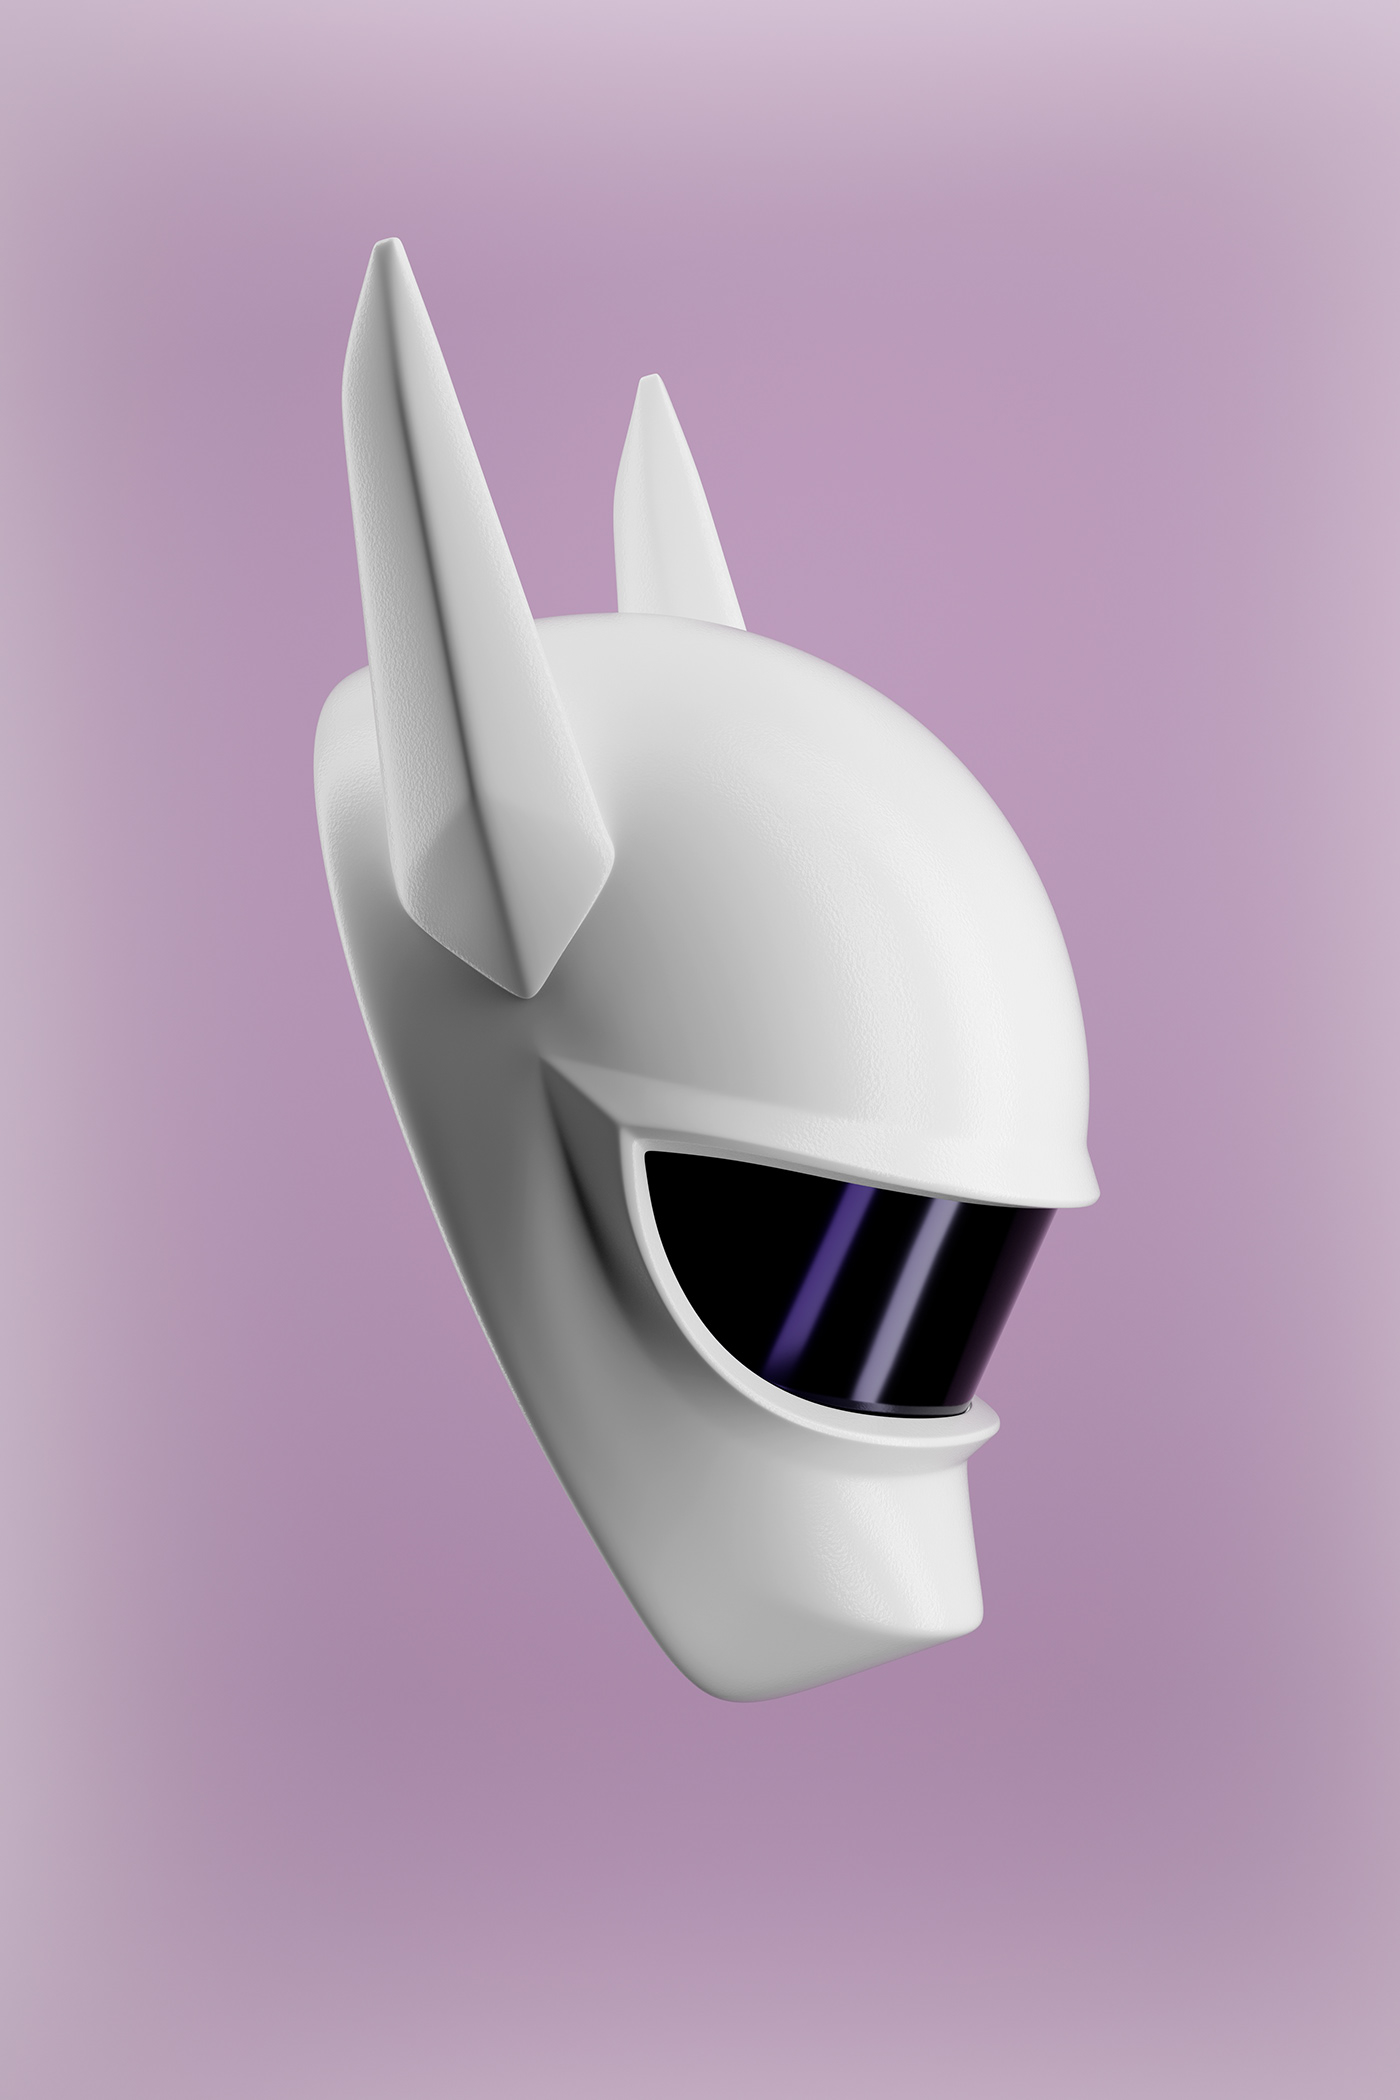 design blender 3D Render visualization mask dj casco Helmet skull